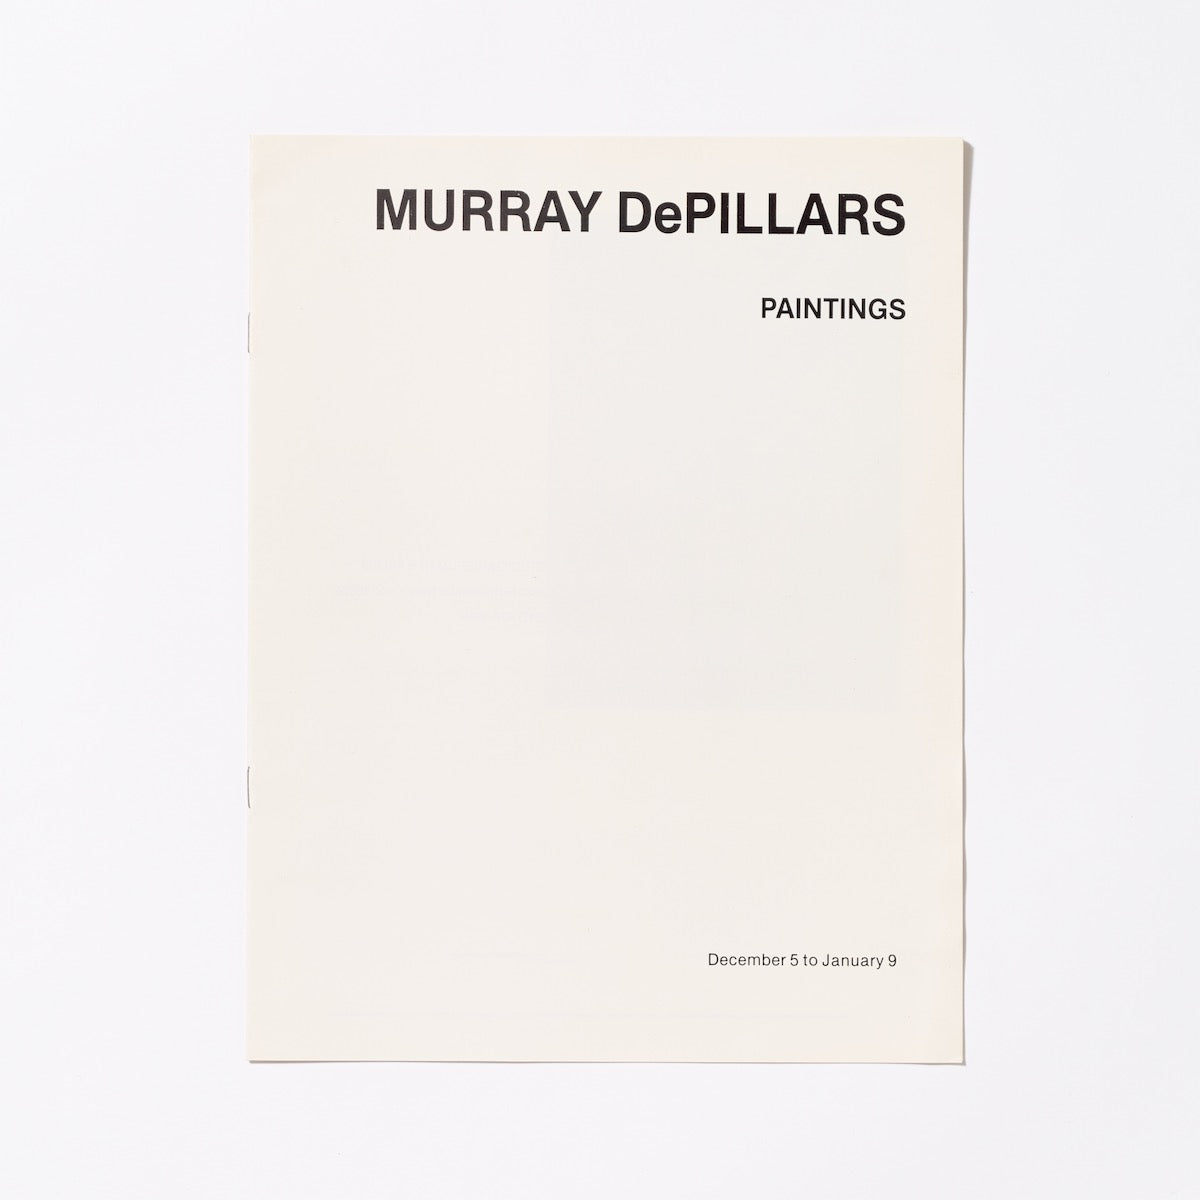 Murray DePillars: Paintings